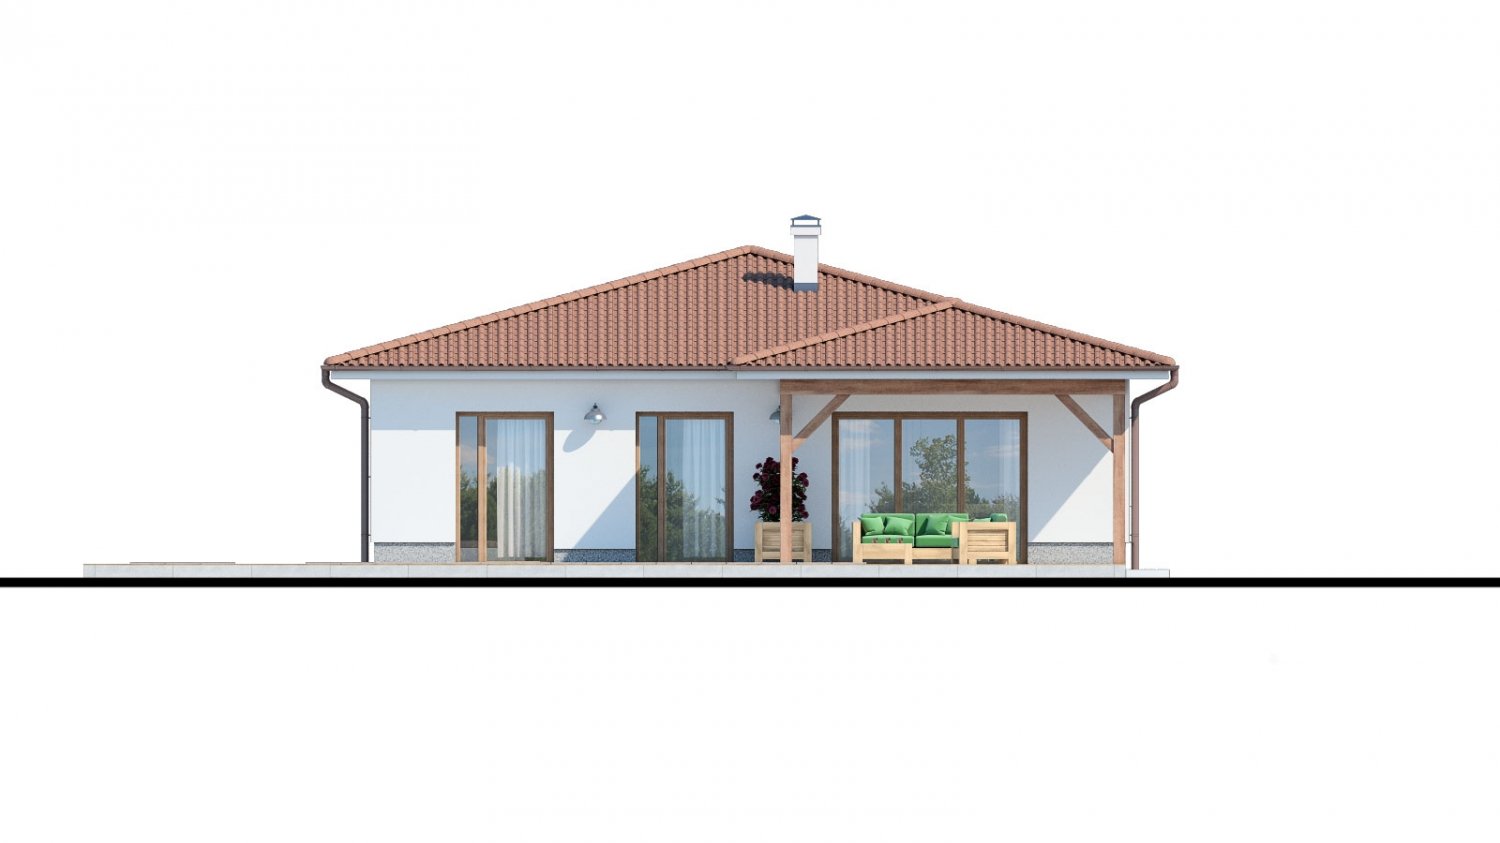 Zrkadlový pohľad 3. - Klasický bungalov s malým sklonem střechy.